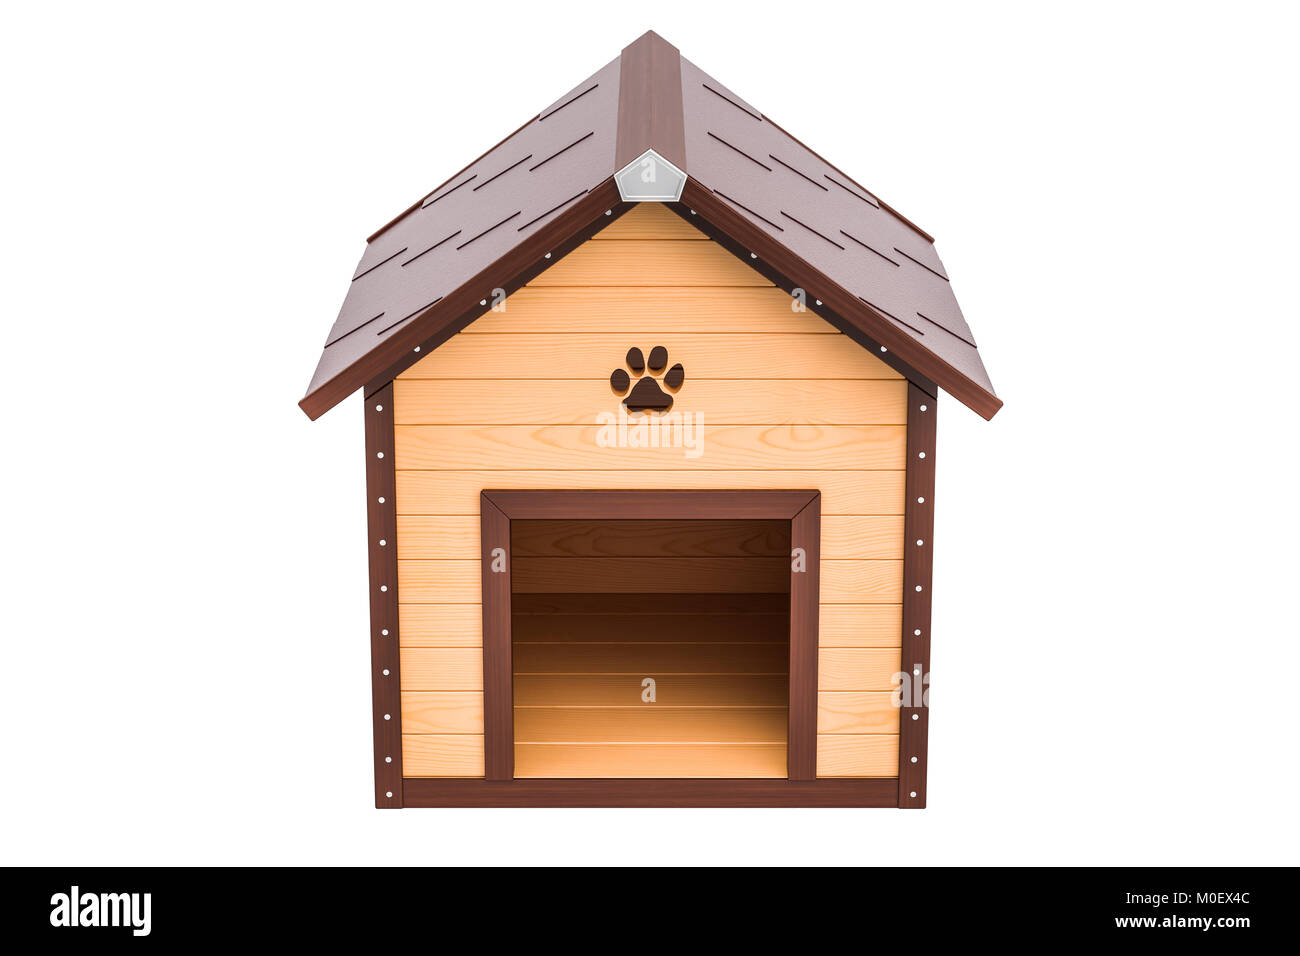 Holz- doghouse Vorderansicht, 3D-Rendering auf weißem Hintergrund Stockfoto